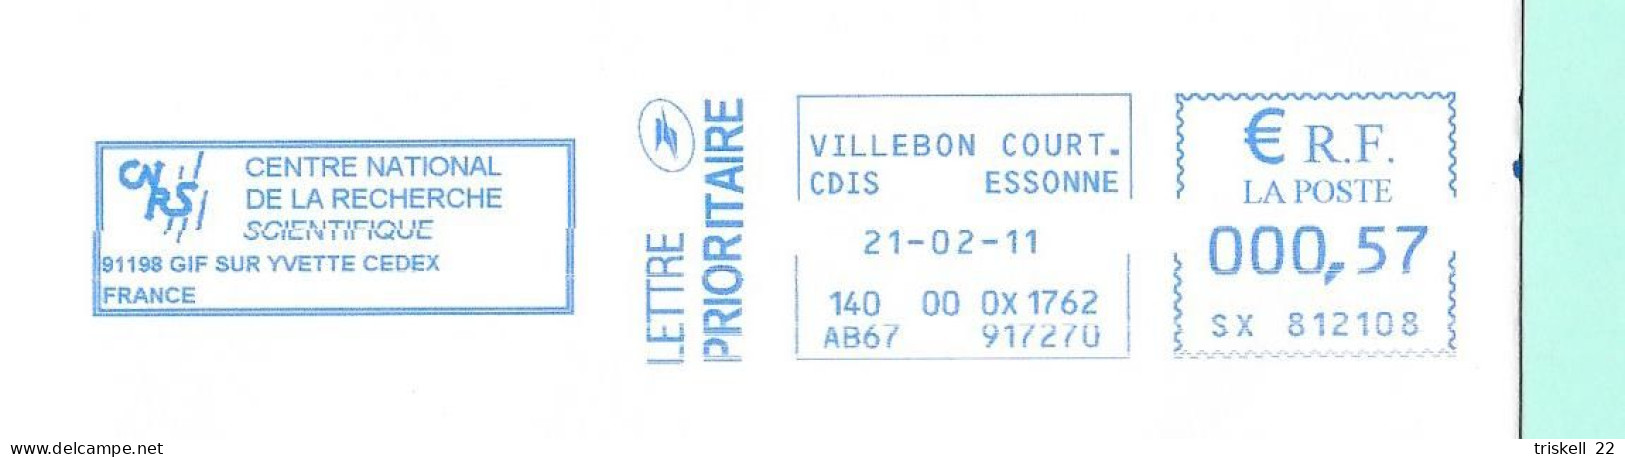 Villebon (CNRS) Essonne Pour Plélo - Maschinenstempel (Sonstige)